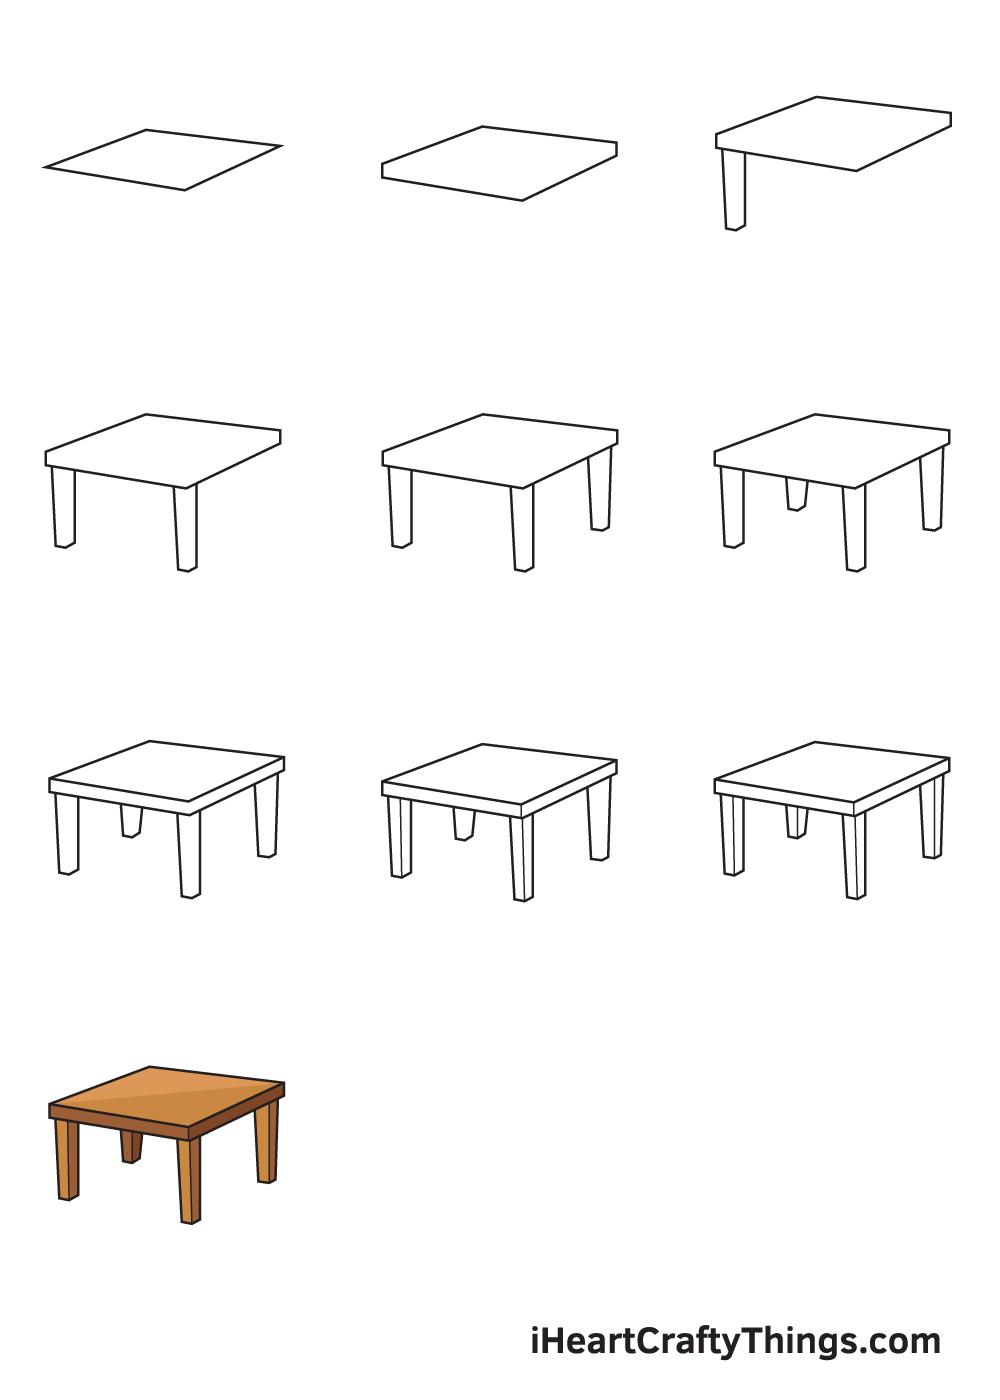 Hướng dẫn cách vẽ cái bàn đơn giản với 9 bước cơ bản